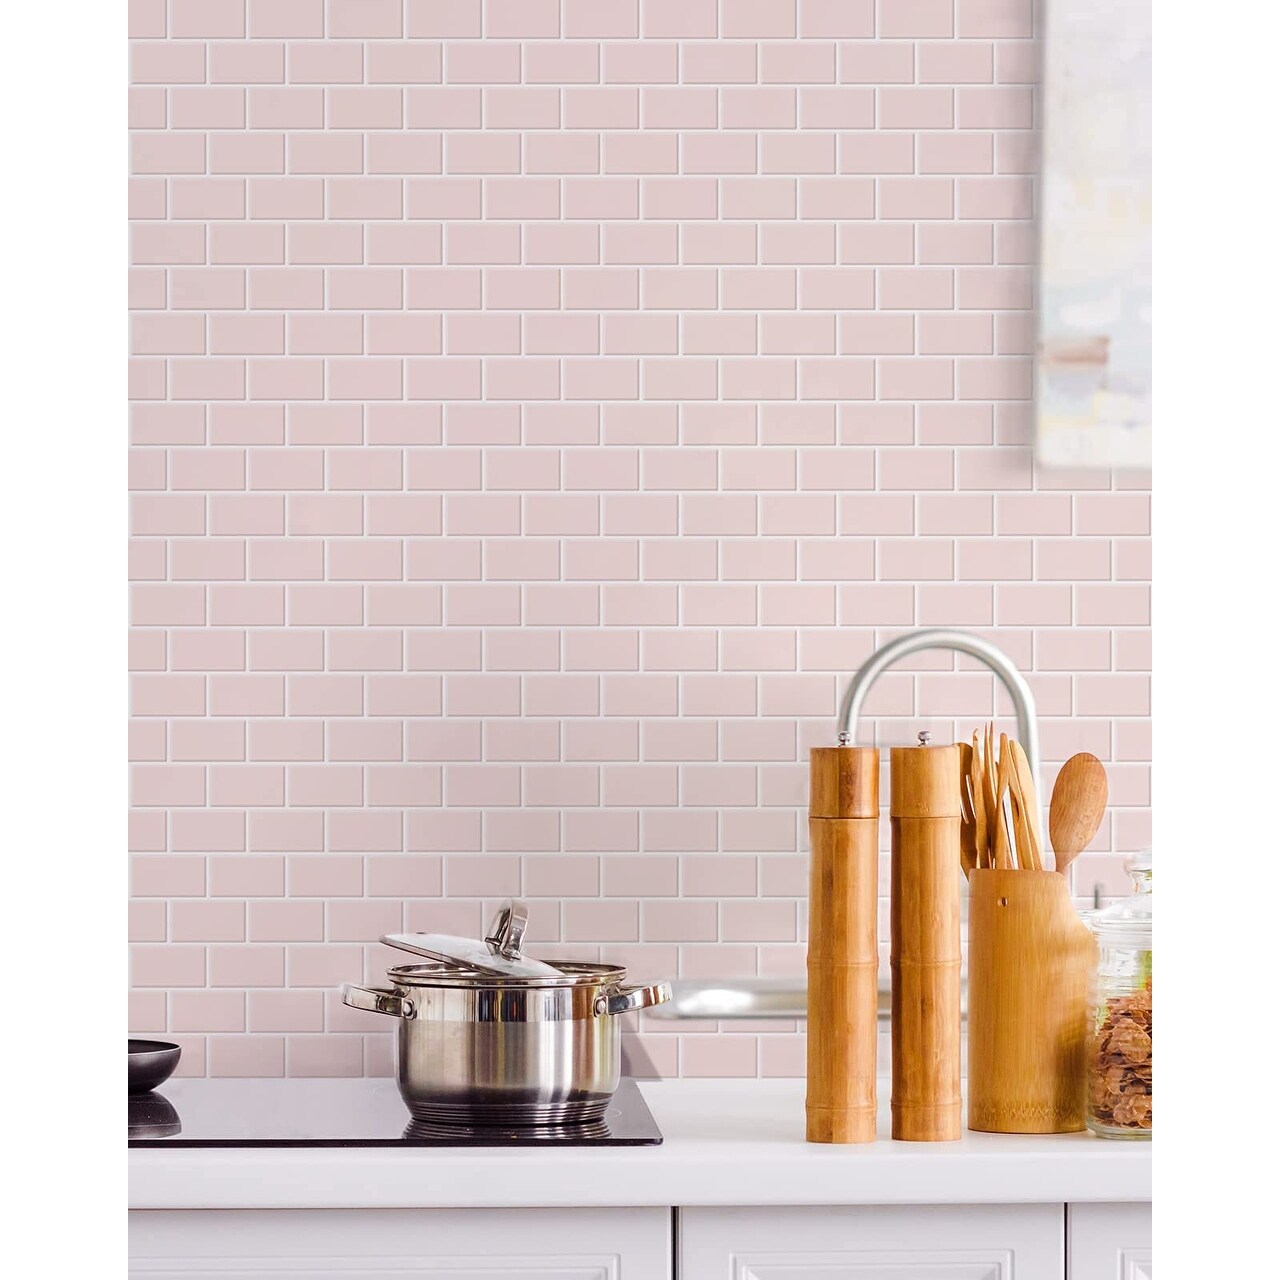 Art3d 12x12 Peel and Stick Backsplash Tile for Kitchen, Subway Tile(10-Pack)  - On Sale - Bed Bath & Beyond - 31288116